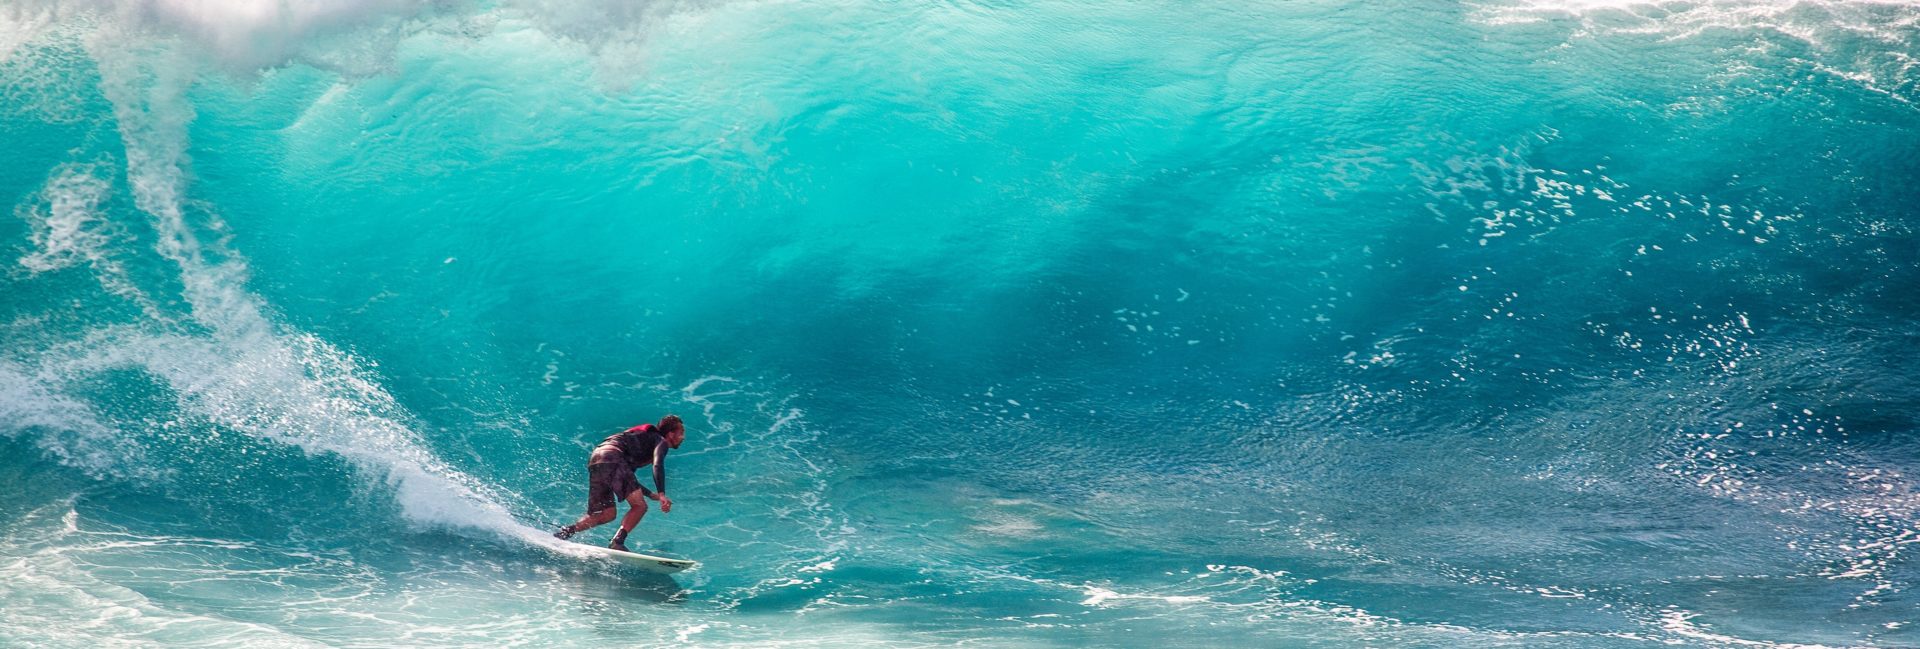 Surfeur sur une vague